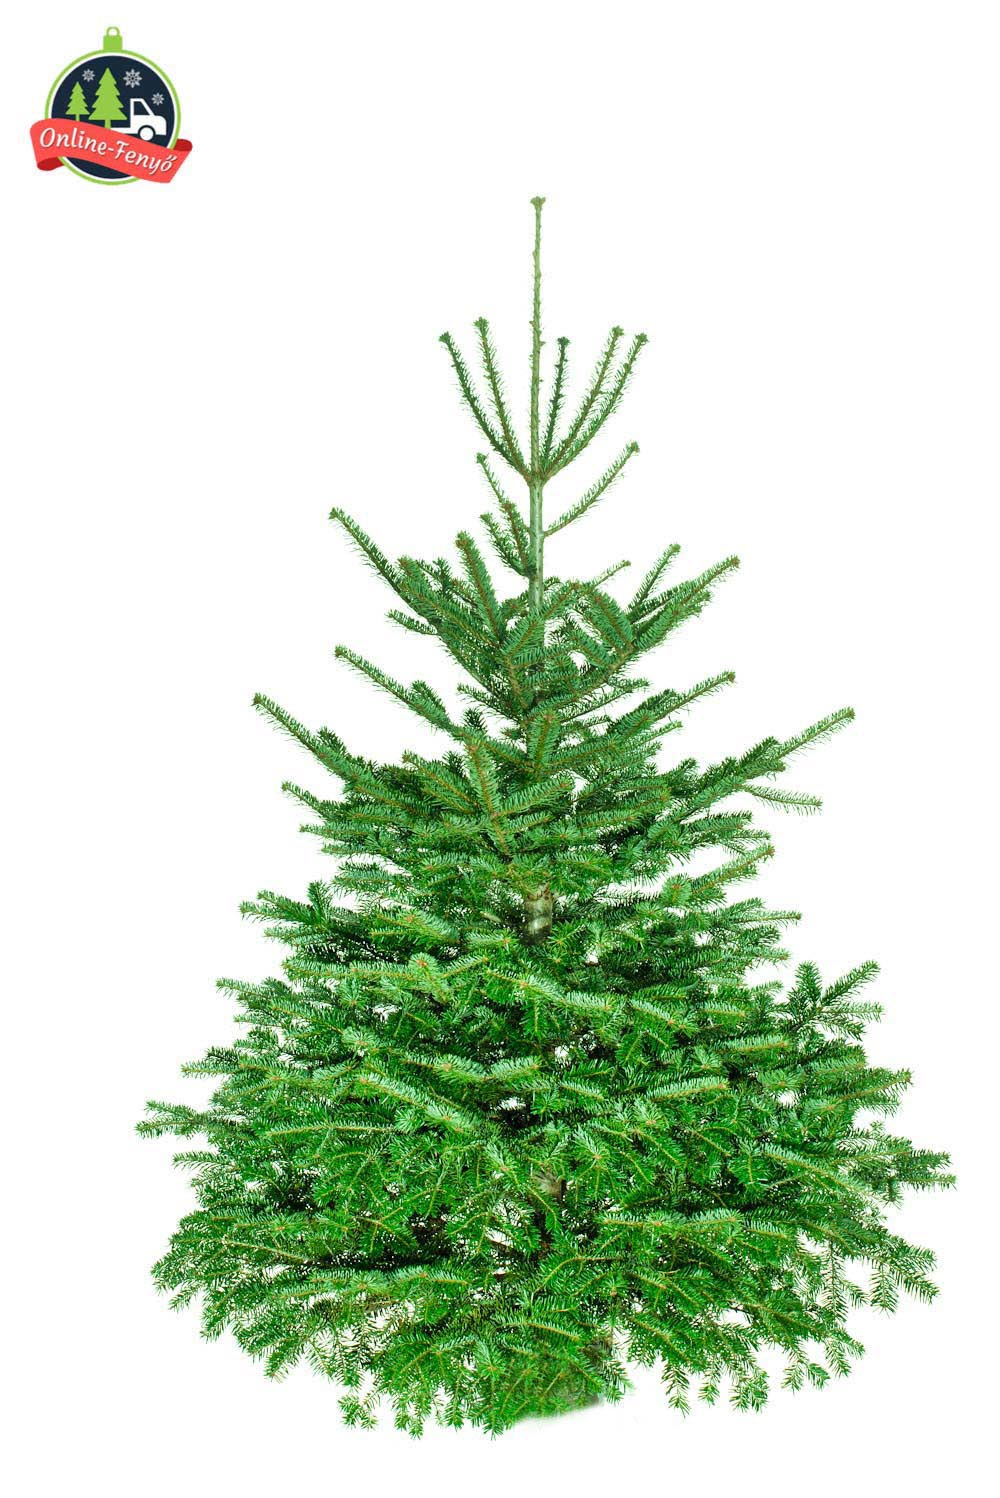 Cégek, üzletek számára beltérre 200, 250 cm-es nordmann karácsonyfa